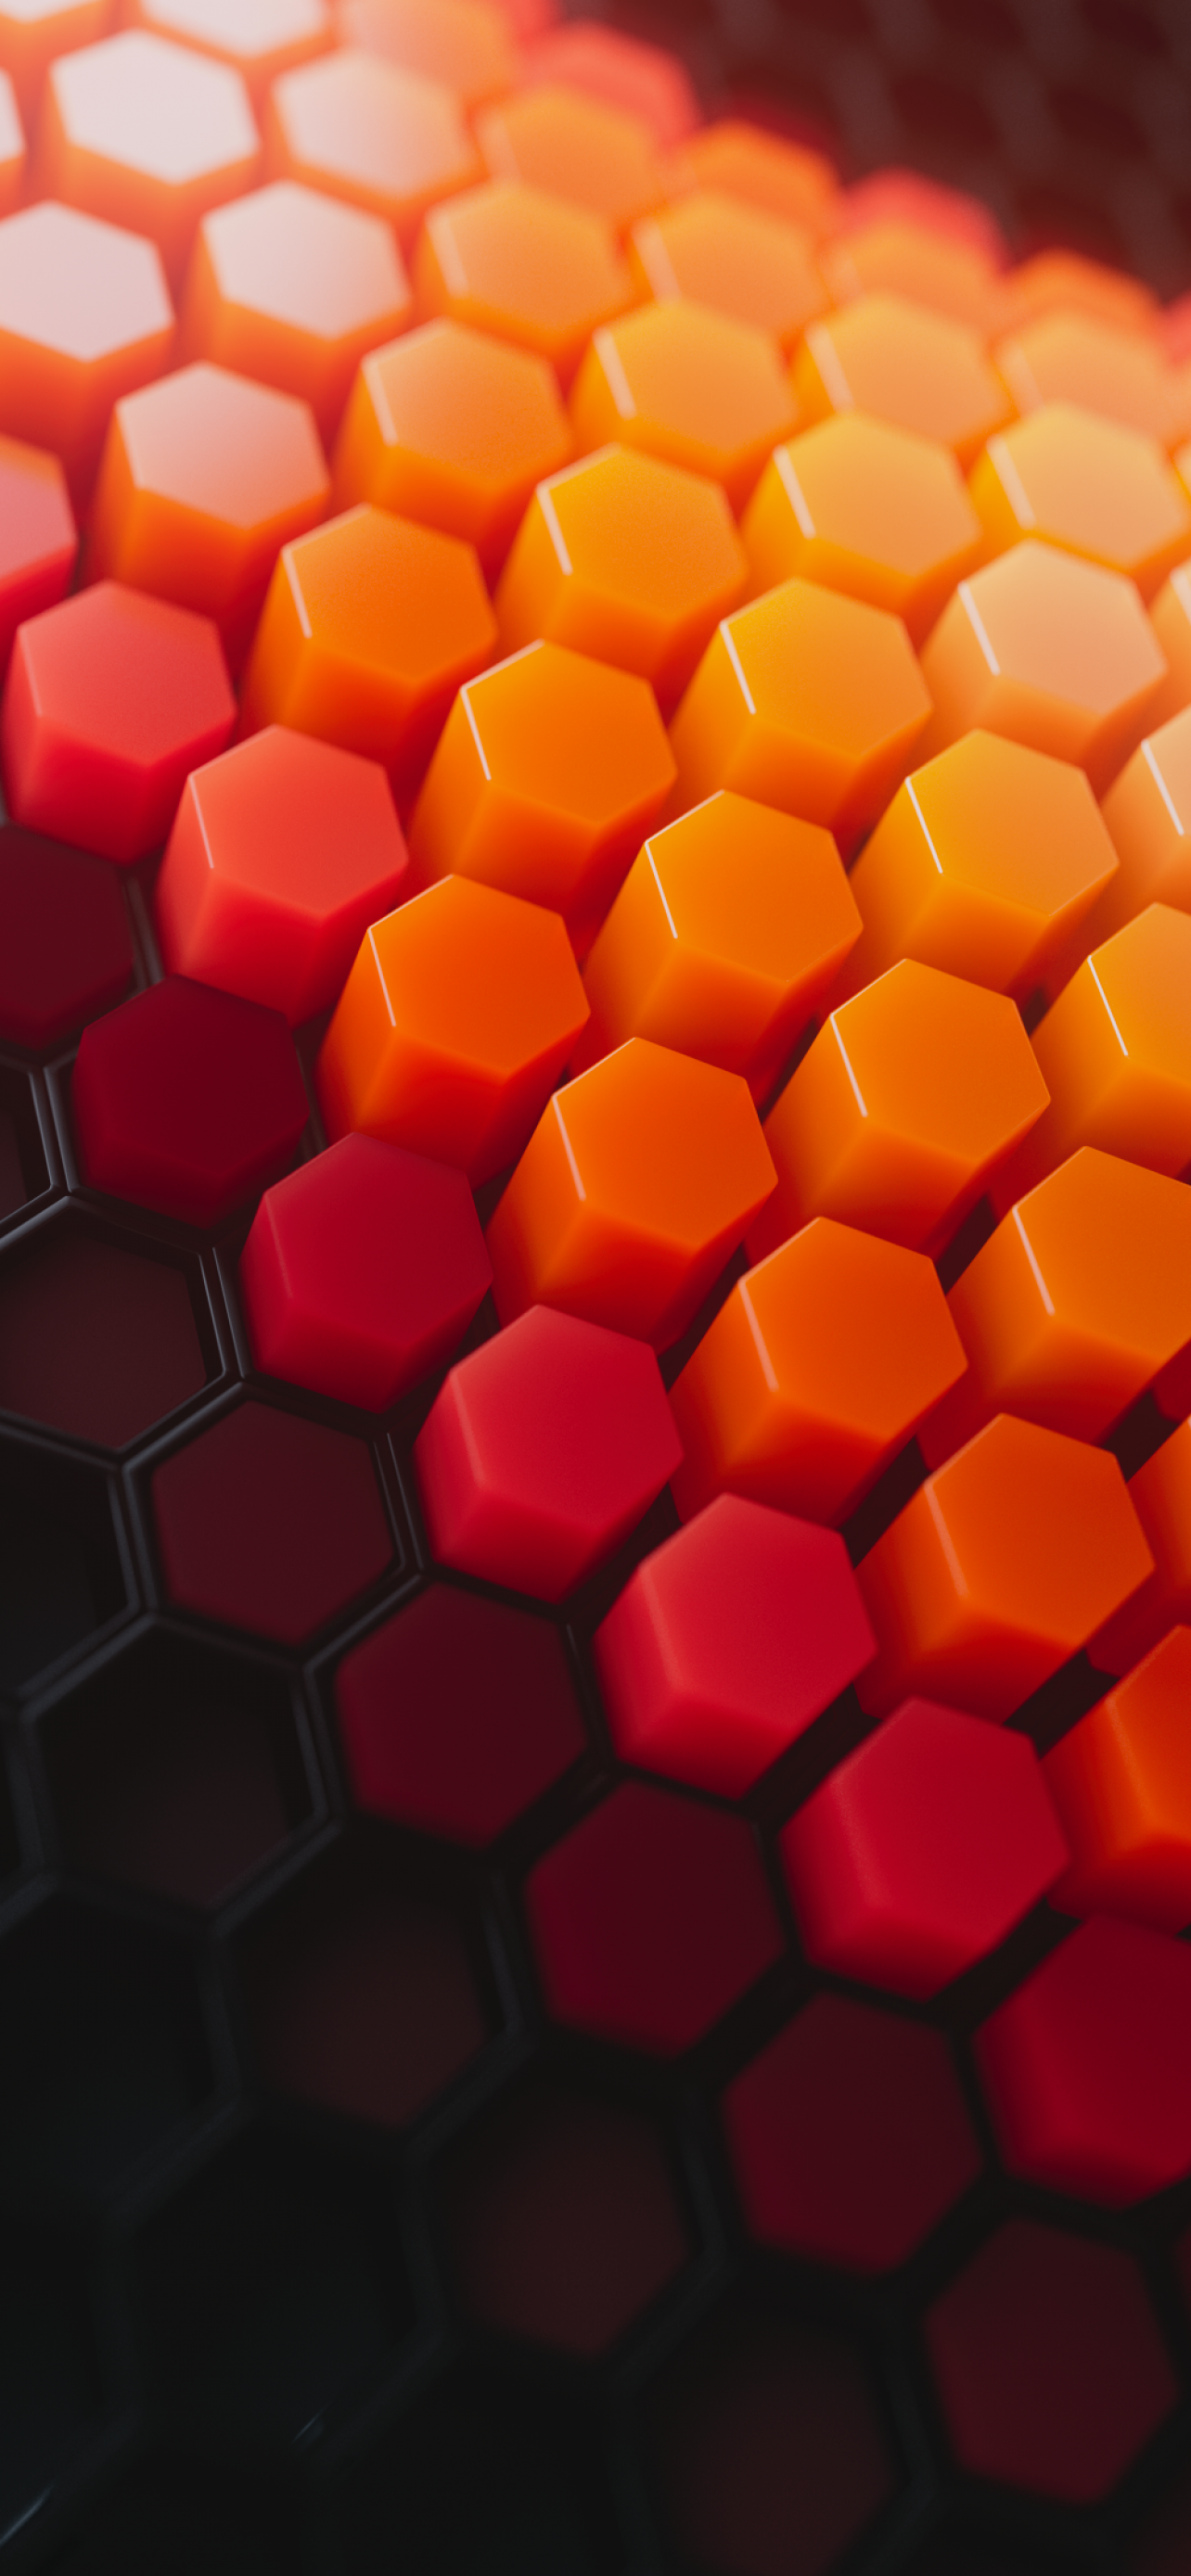 Với bộ sưu tập hình nền Hexagons Wallpaper 4K, bạn sẽ có cơ hội trải nghiệm những hình ảnh đầy màu sắc và đa dạng, tạo ra một không gian tràn đầy sự sáng tạo cho thiết bị của bạn. Bộ sưu tập này nhất định sẽ không làm bạn thất vọng.